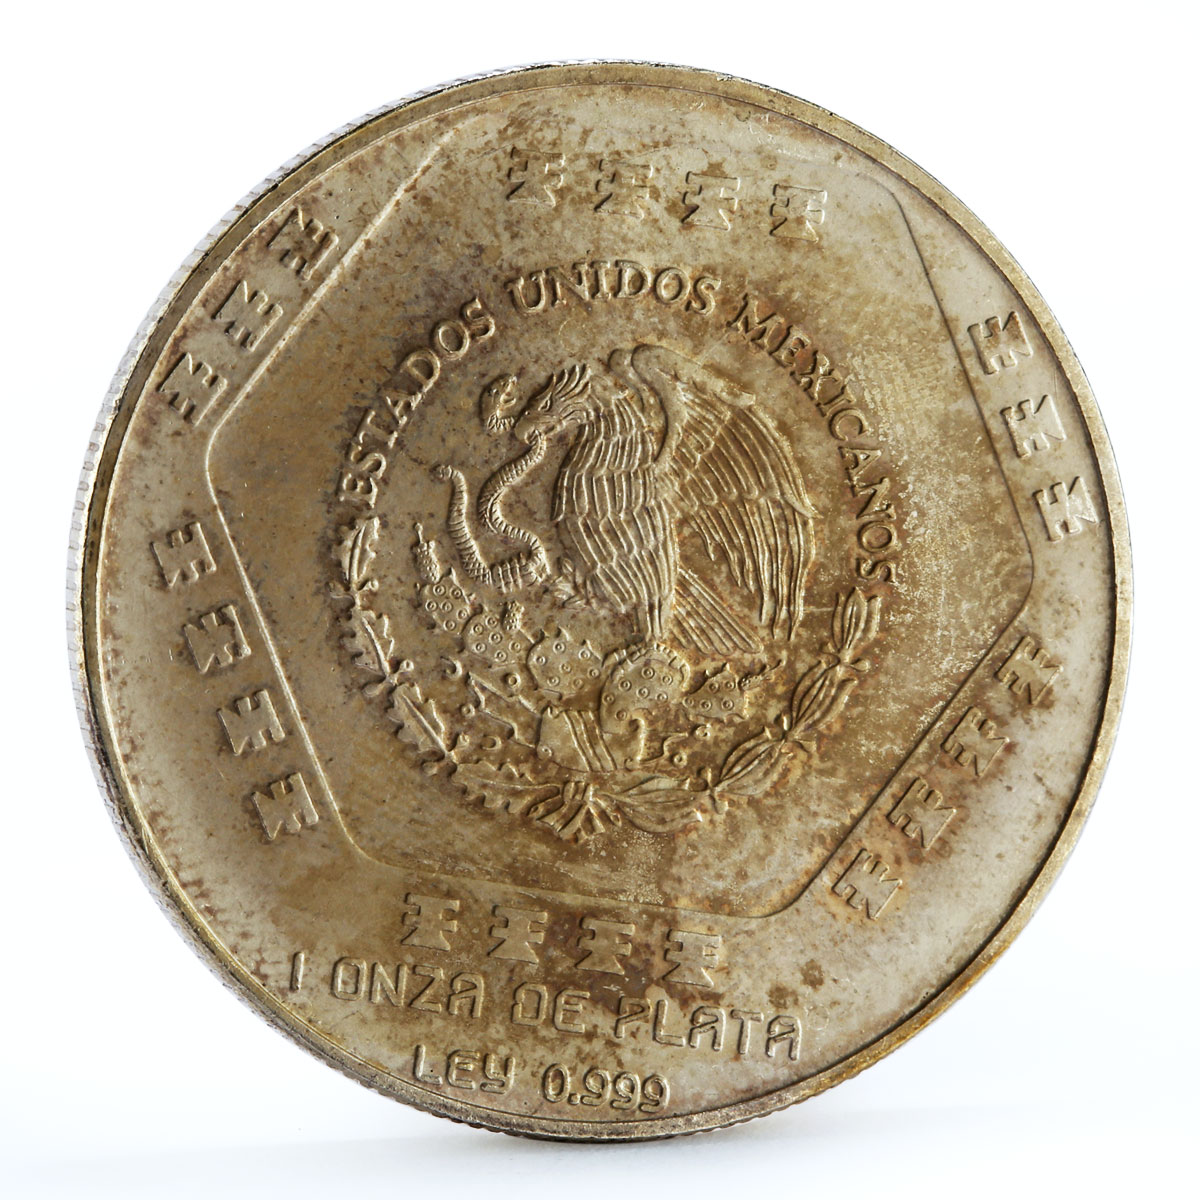 Mexico 5 pesos Precolombina series Chaac Mool silver coin 1994